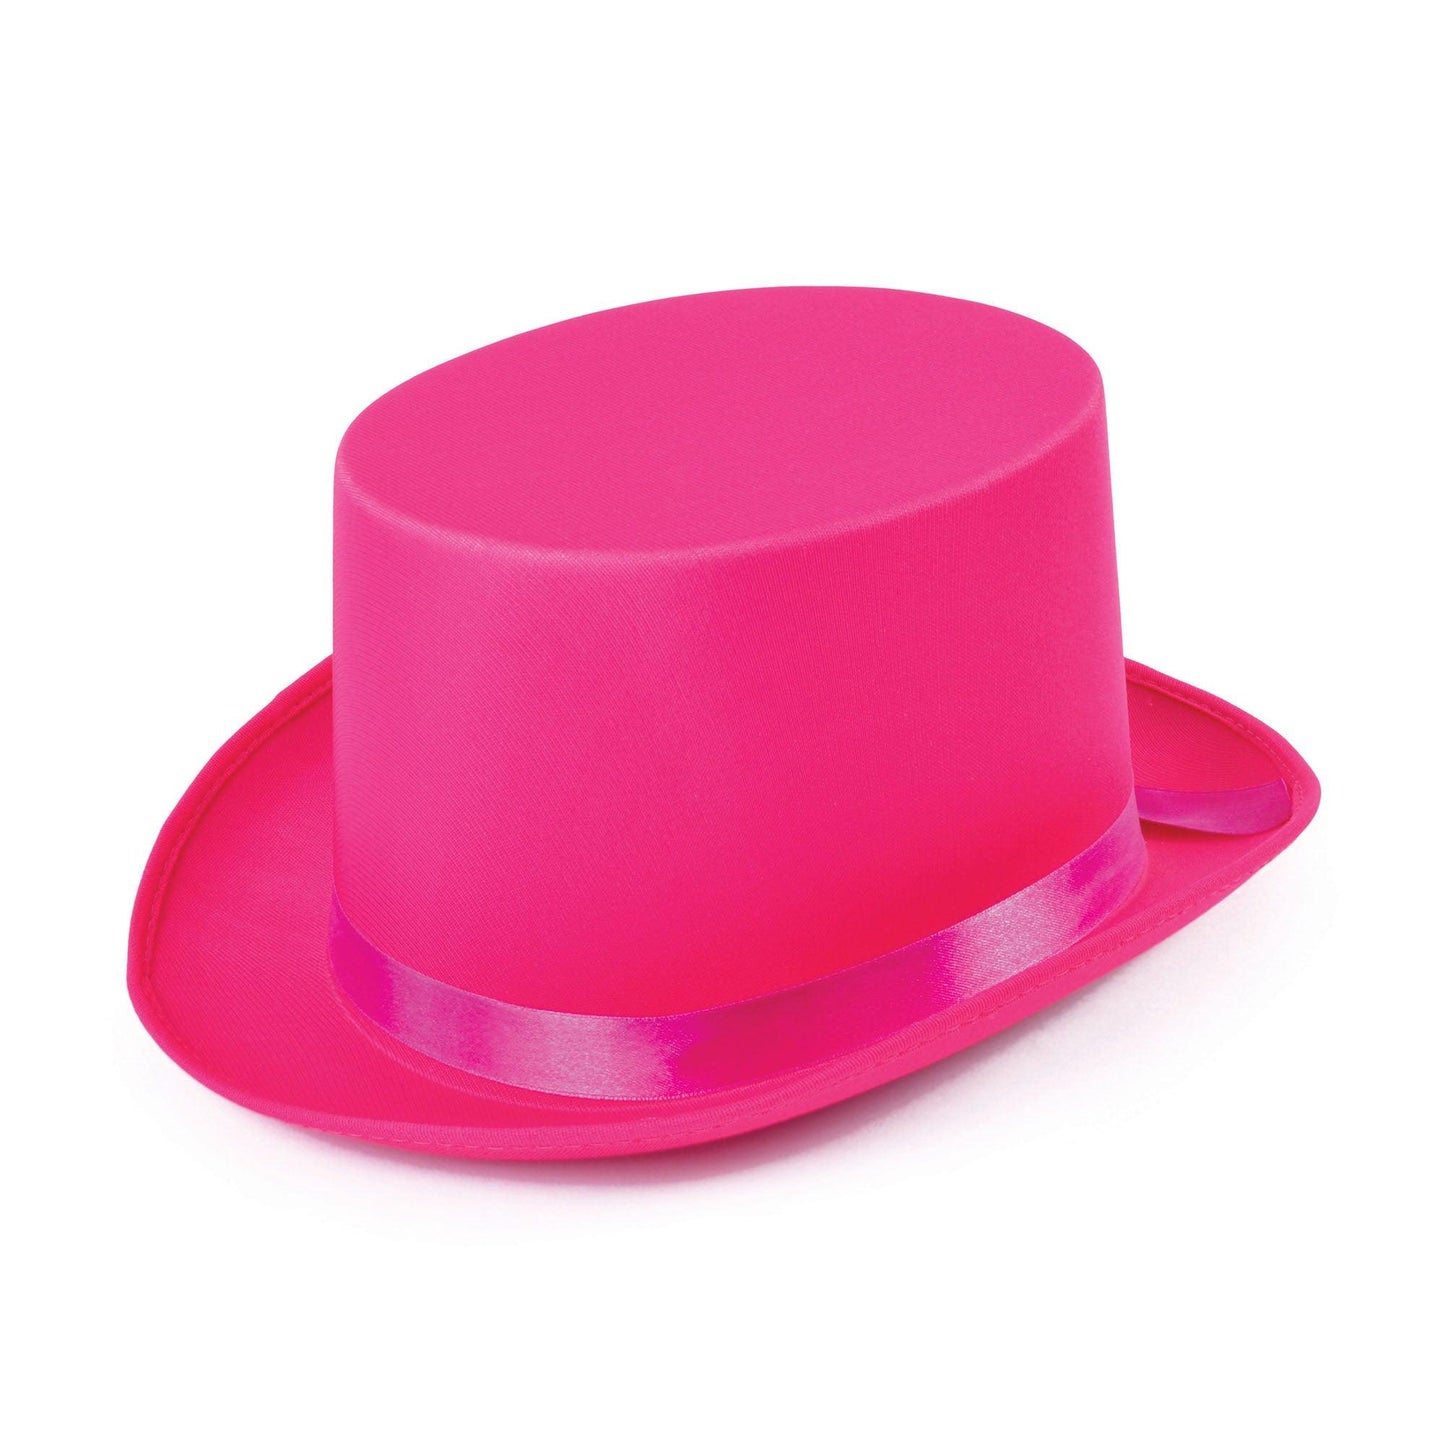 Top Hat Pink Satin - Labreeze